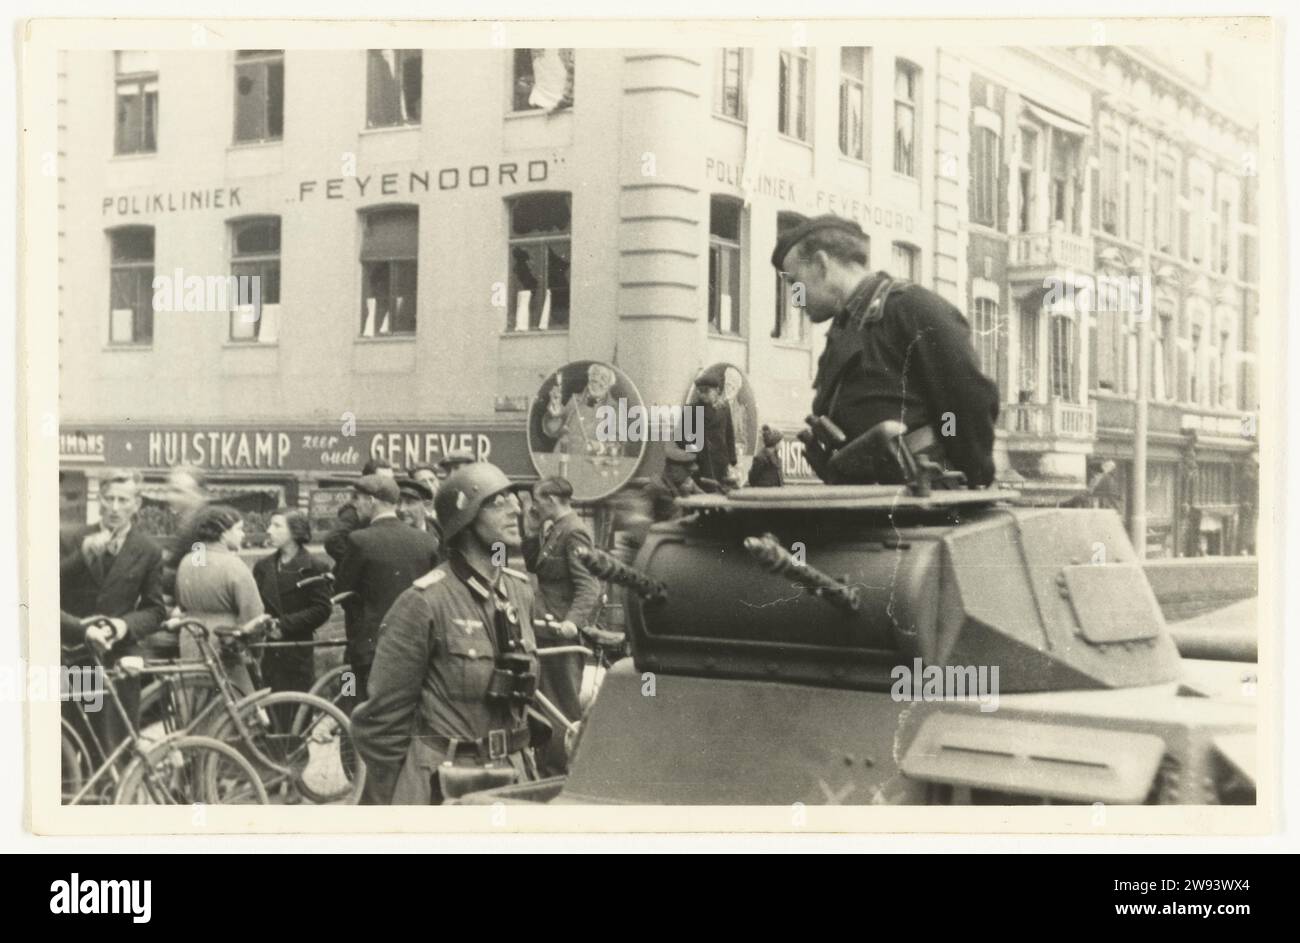 Armée allemande à Rotterdam, 1940 photographe des soldats allemands de la Wehrmacht, l'un dans un char avec une casquette et des jumelles, se parlent dans la rue à Rotterdam-Zuid. Celui de gauche a un casque, porte des lunettes et des jumelles autour du cou. Le Feyenoord Kliniek est visible en arrière-plan. Sur la droite sont les Néerlandais, avec le vélo, parlant. Ce seraient les chars allemands de la 9e division blindée qui prendraient contact avec les hommes du 3e bataillon. La photo a probablement été prise autour de la capitulation des pays-Bas le 15 mai 1940. Rotterdam support photographique gélatine argentique tirage troo Banque D'Images